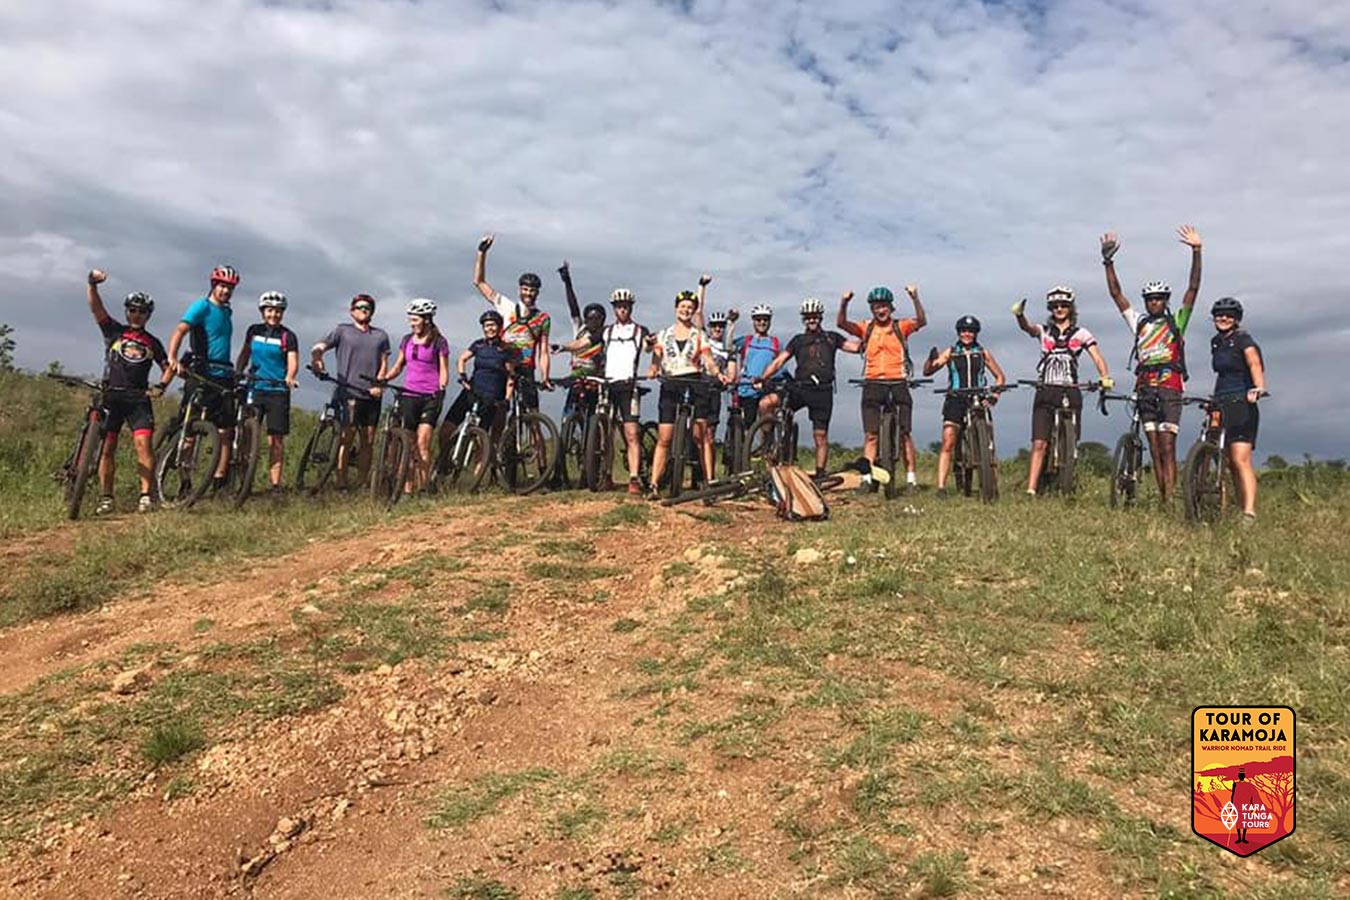 kara-tunga-tour-of-karamoja-2020-bike-event-uganda-carina-6